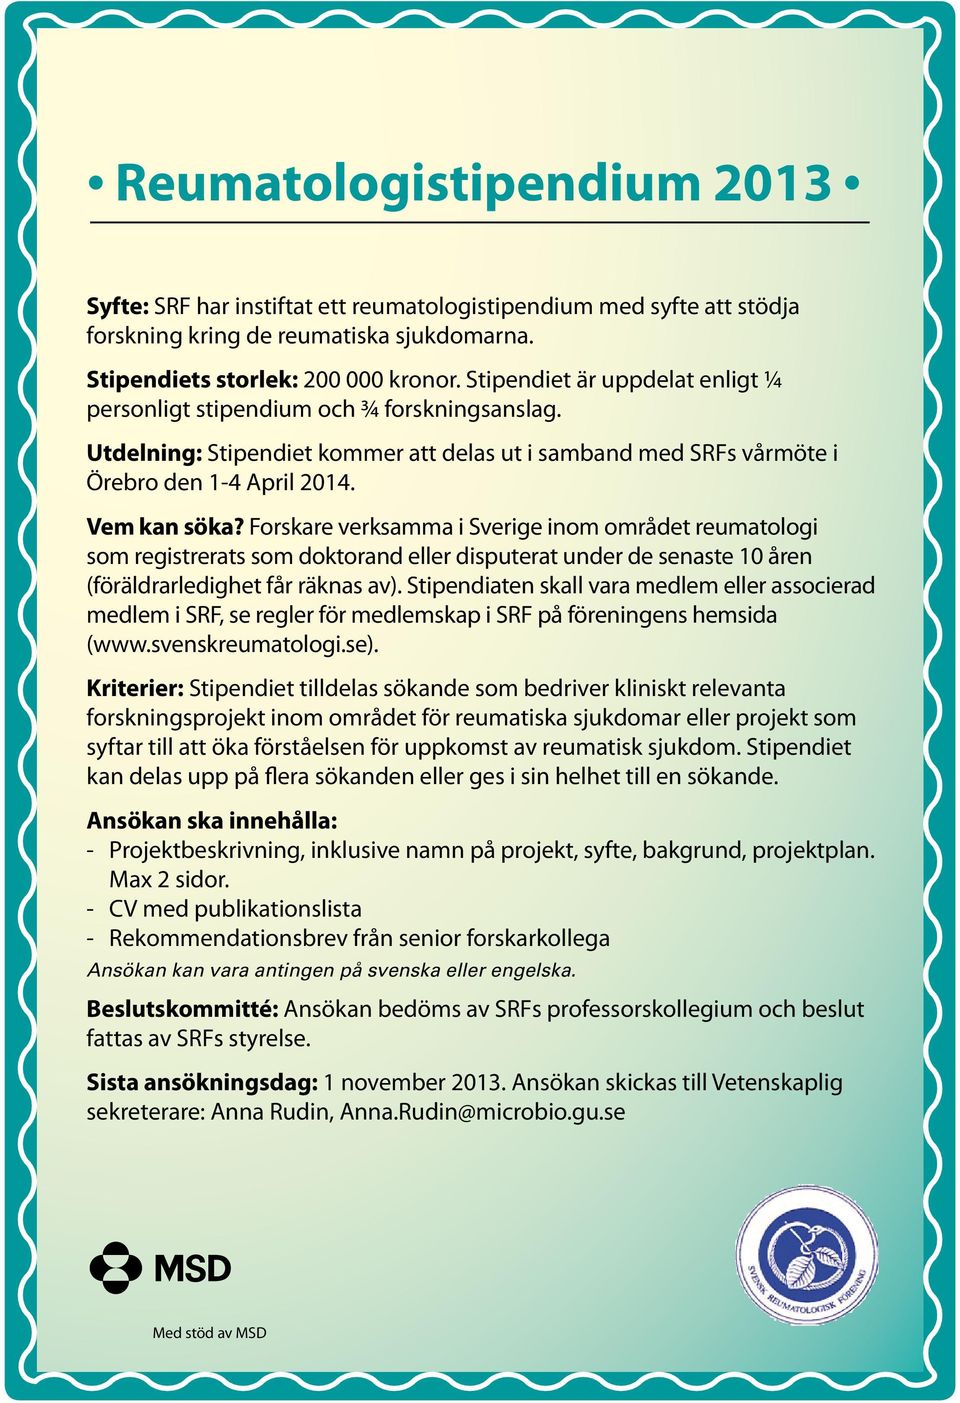 Forskare verksamma i Sverige inom området reumatologi som registrerats som doktorand eller disputerat under de senaste 10 åren (föräldrarledighet får räknas av).